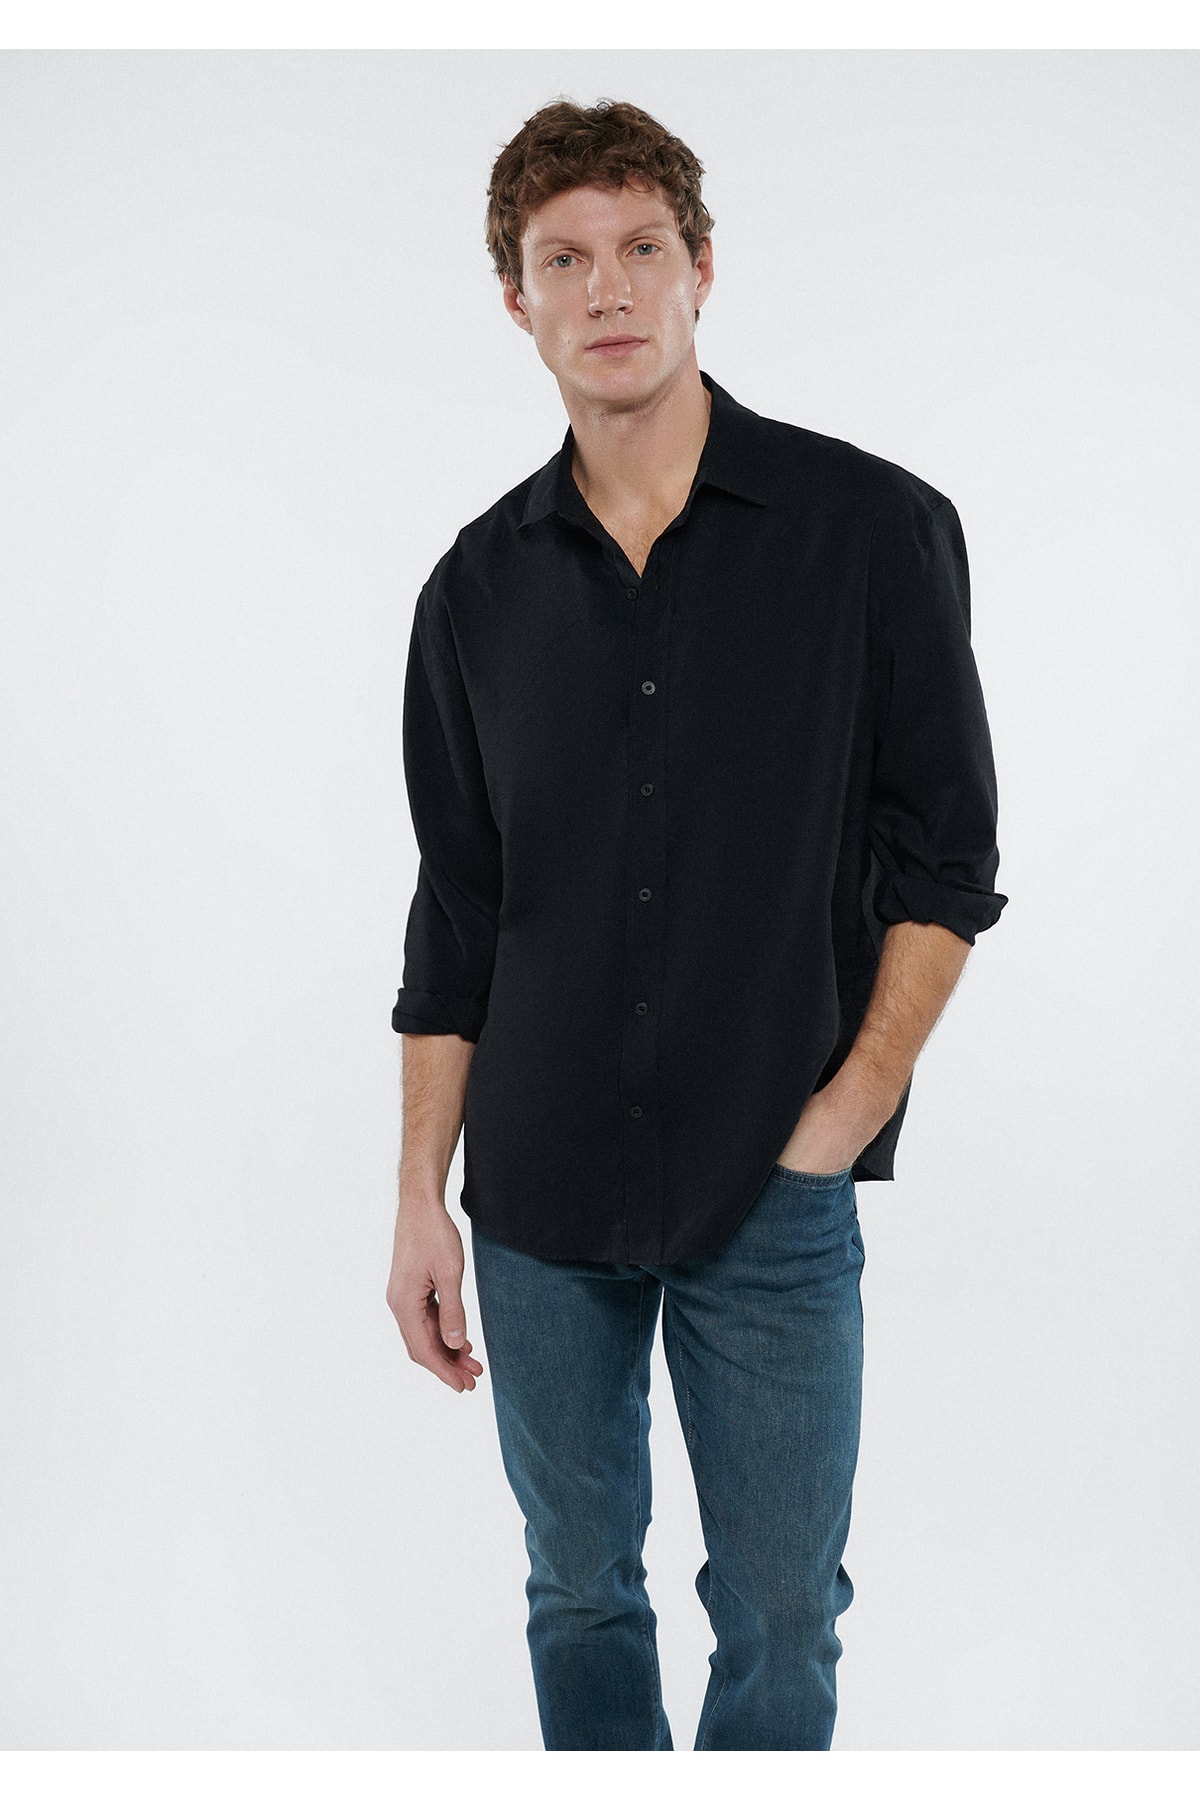 تصویر پیراهن مردانه برند ماوی اصل 210670 